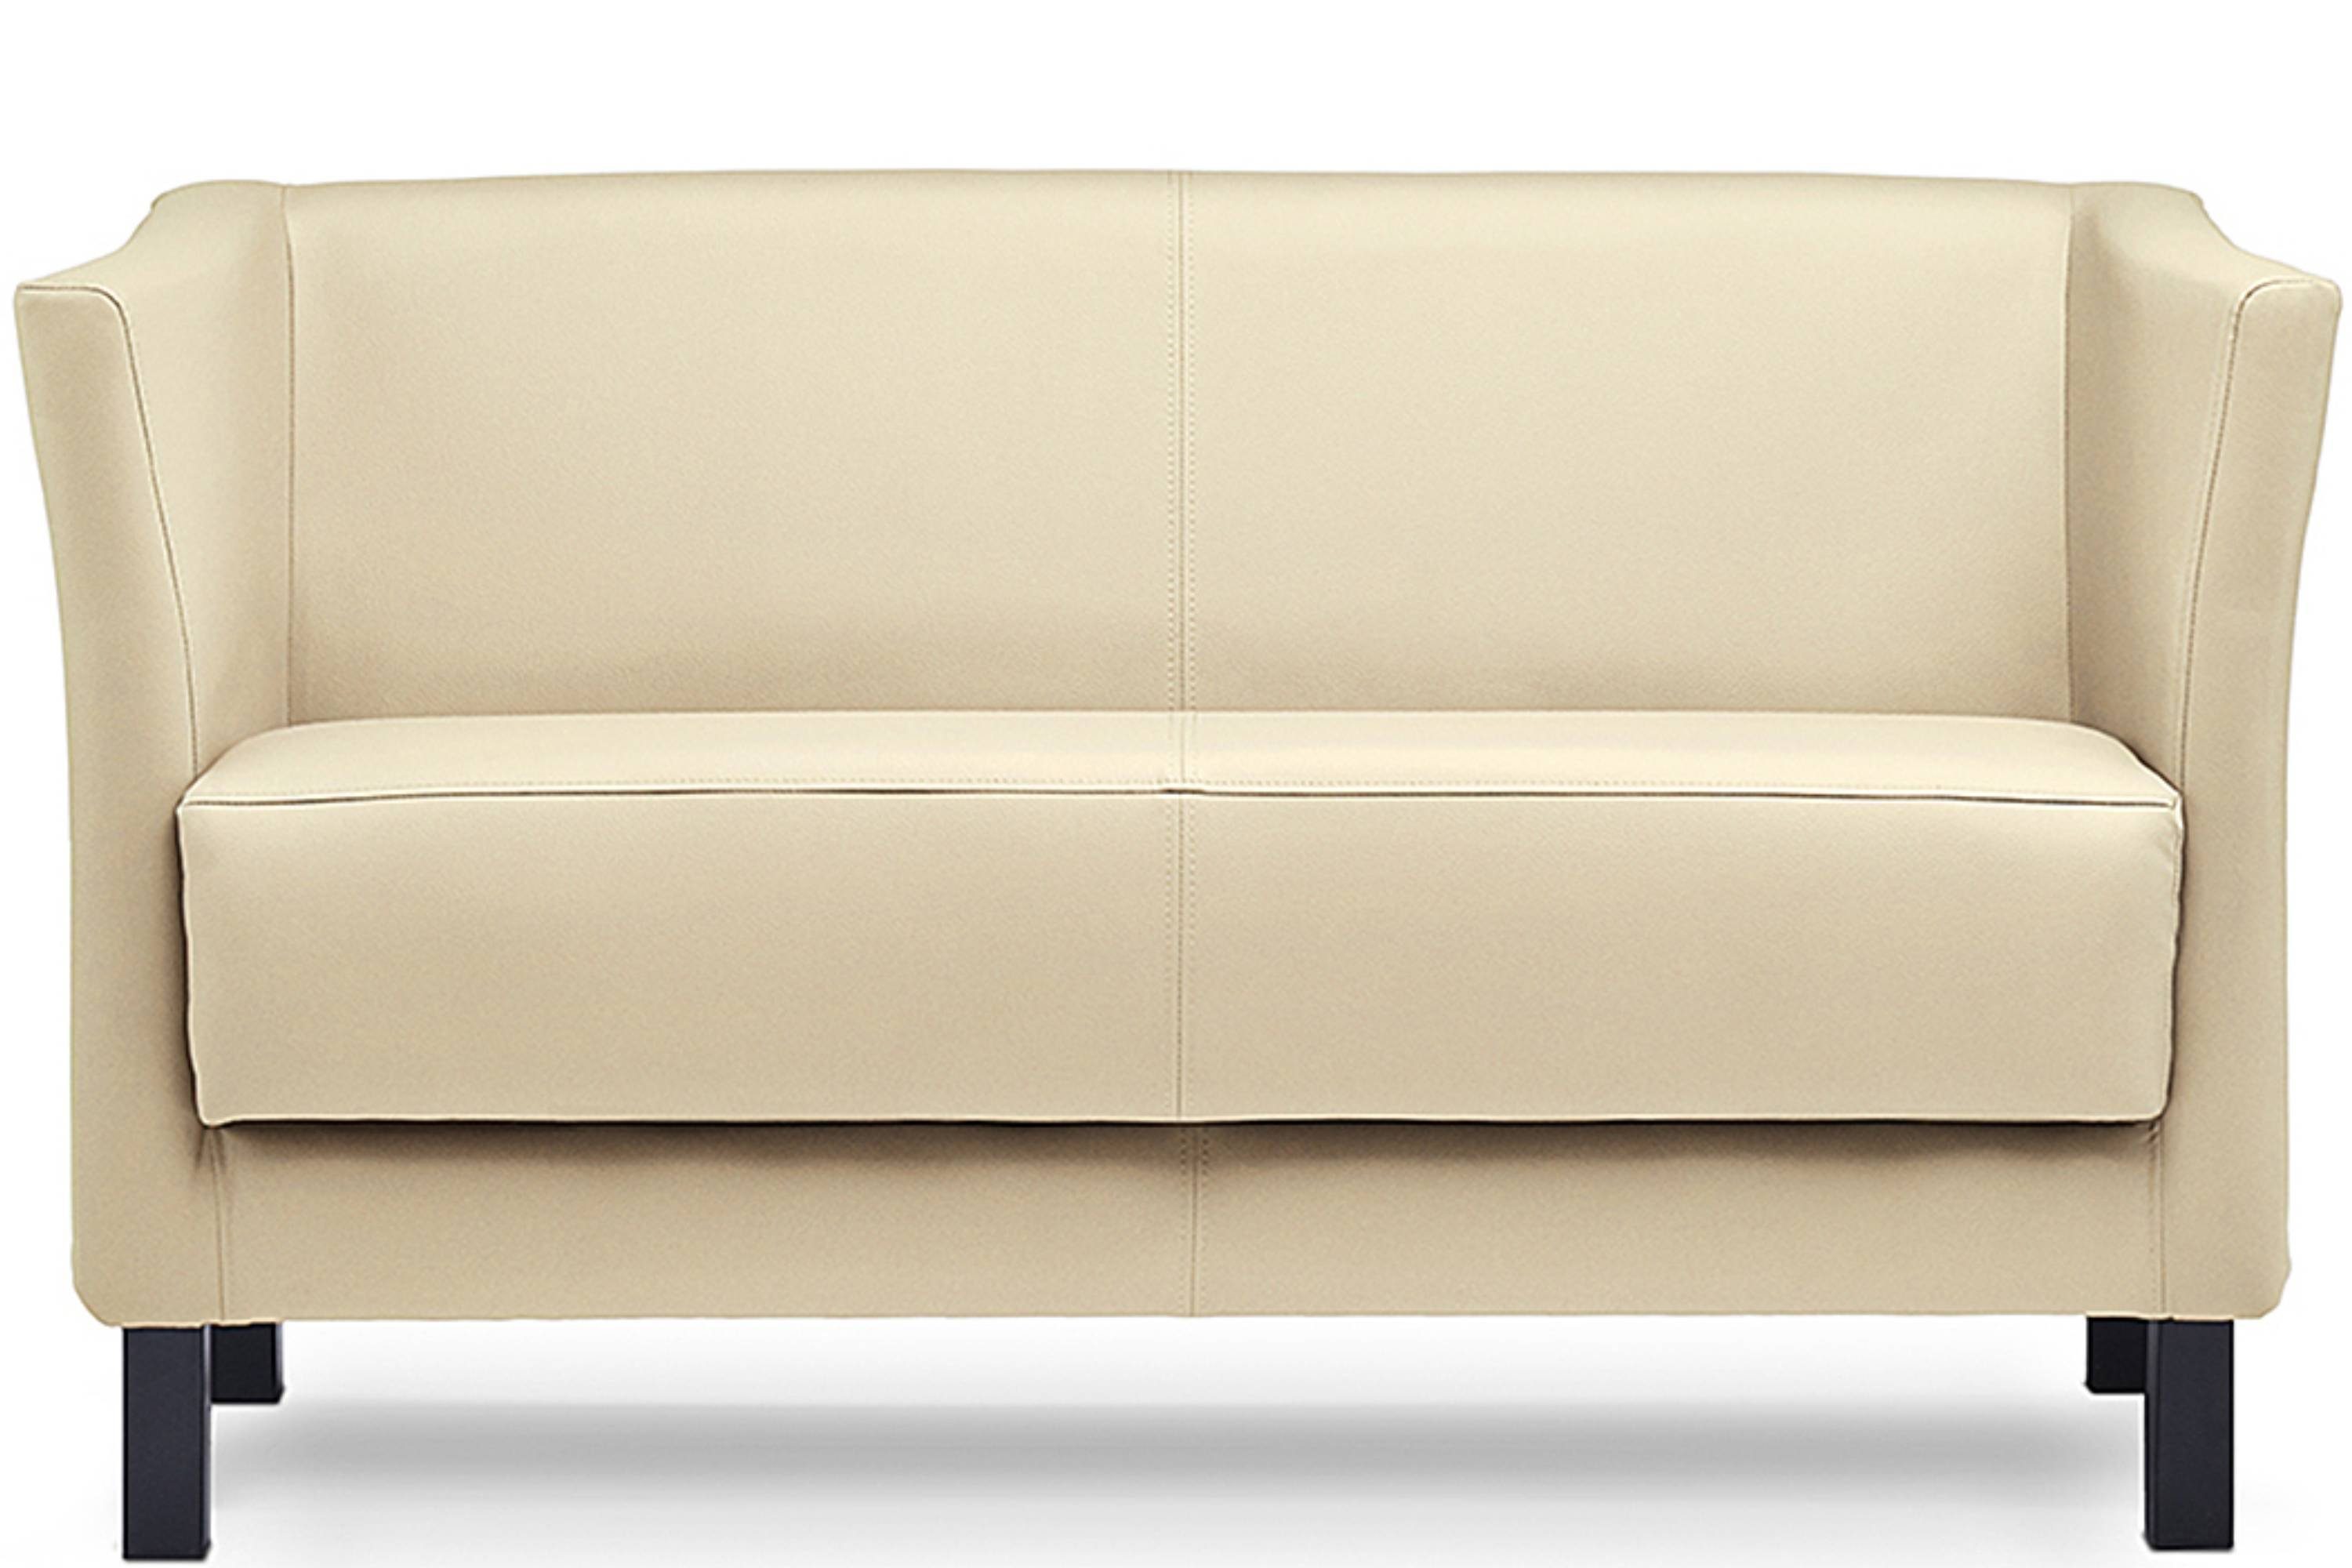 ESPECTO creme Sofa hohe Rückenlehne, creme Massivholzbeine 2-Sitzer hohe Sitzfläche 2 und Personen, | Konsimo Kunstleder, weiche